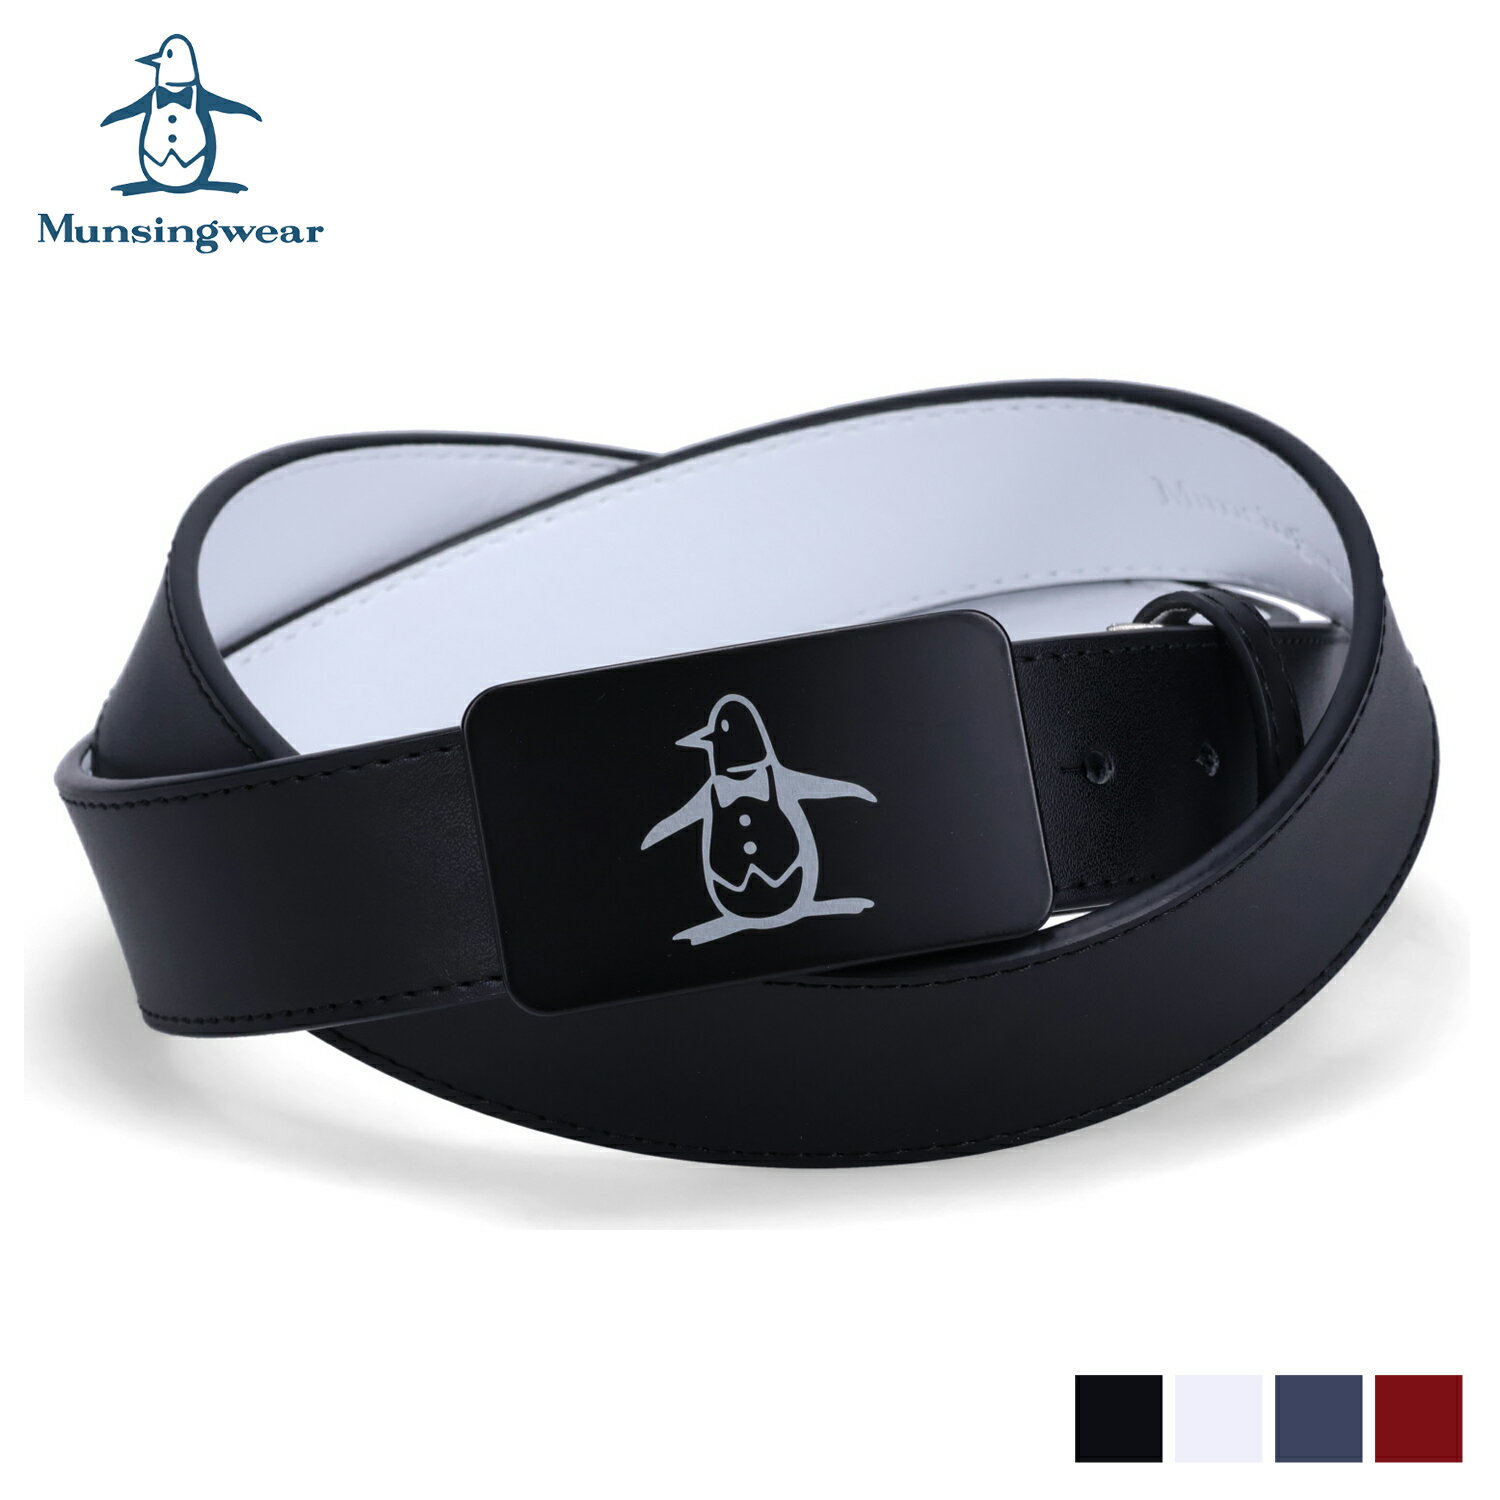 レザーベルト Munsingwear BELT マンシングウェア ベルト レザーベルト メンズ ブラック ホワイト ネイビー レッド 黒 白 MU-1060223